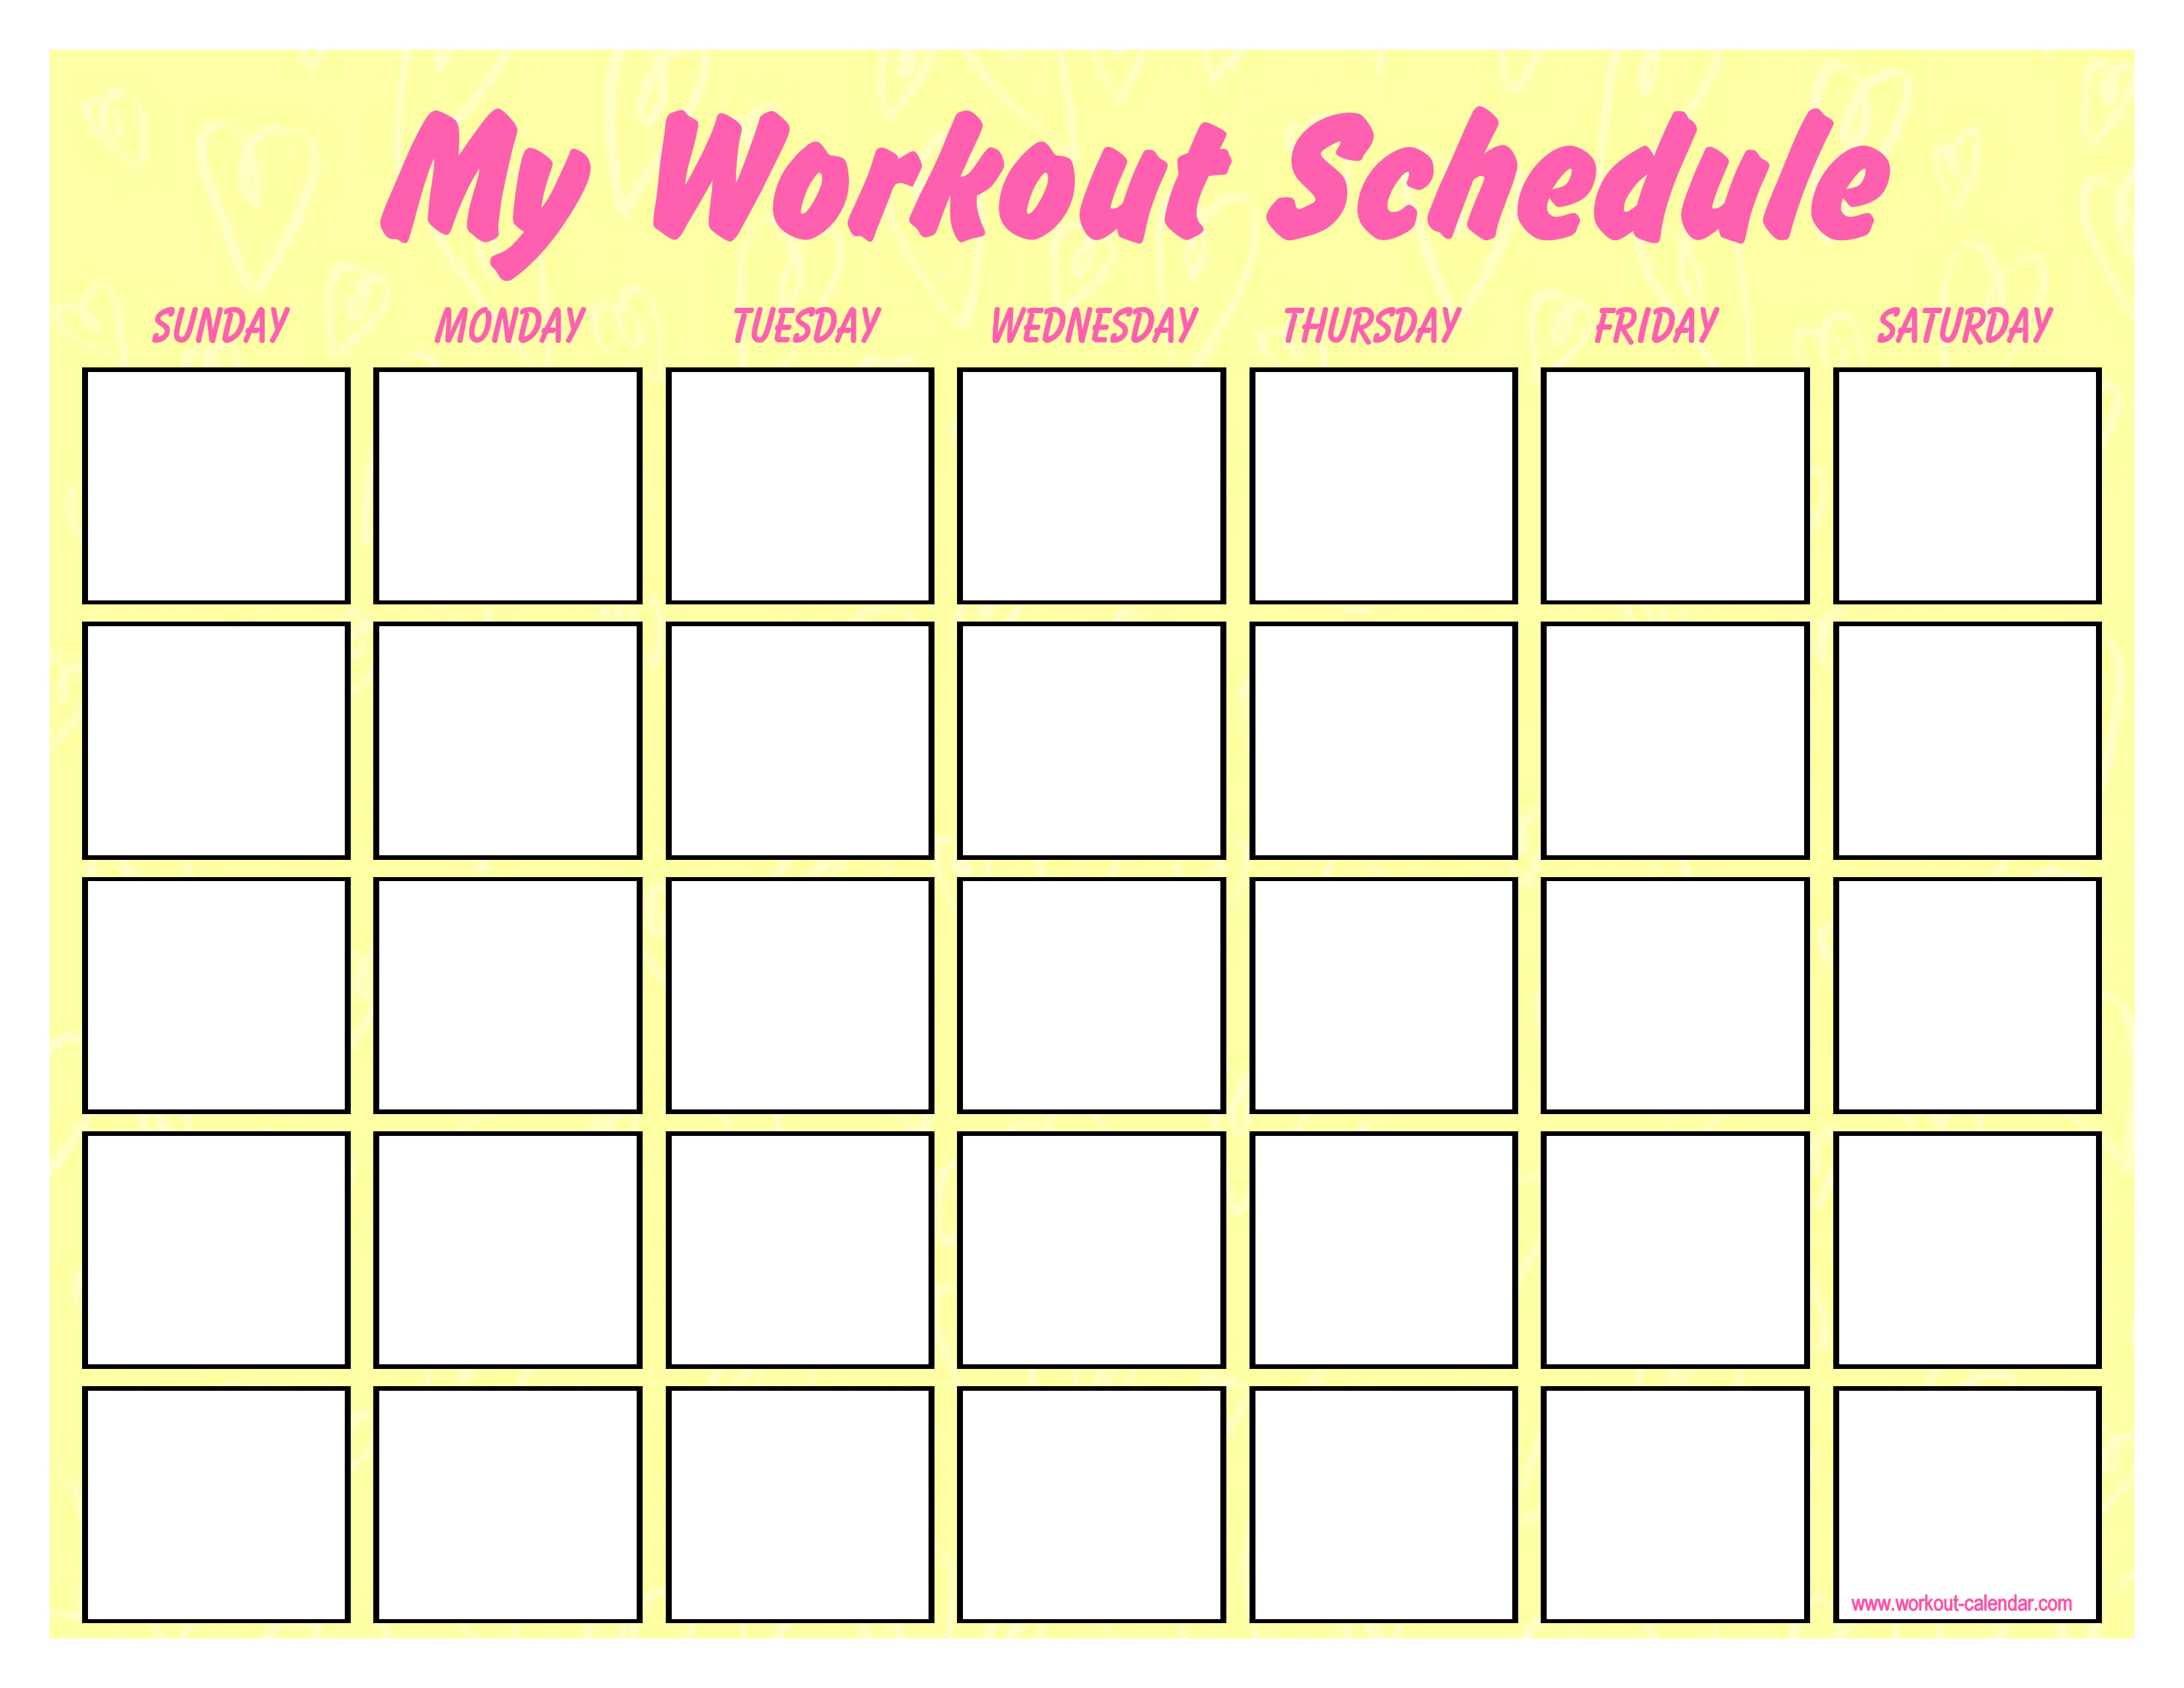 Month 30. Календарь тренировок. Календарь тренировок пустой. Календарь тренировок на месяц. Календарик для тренировок.